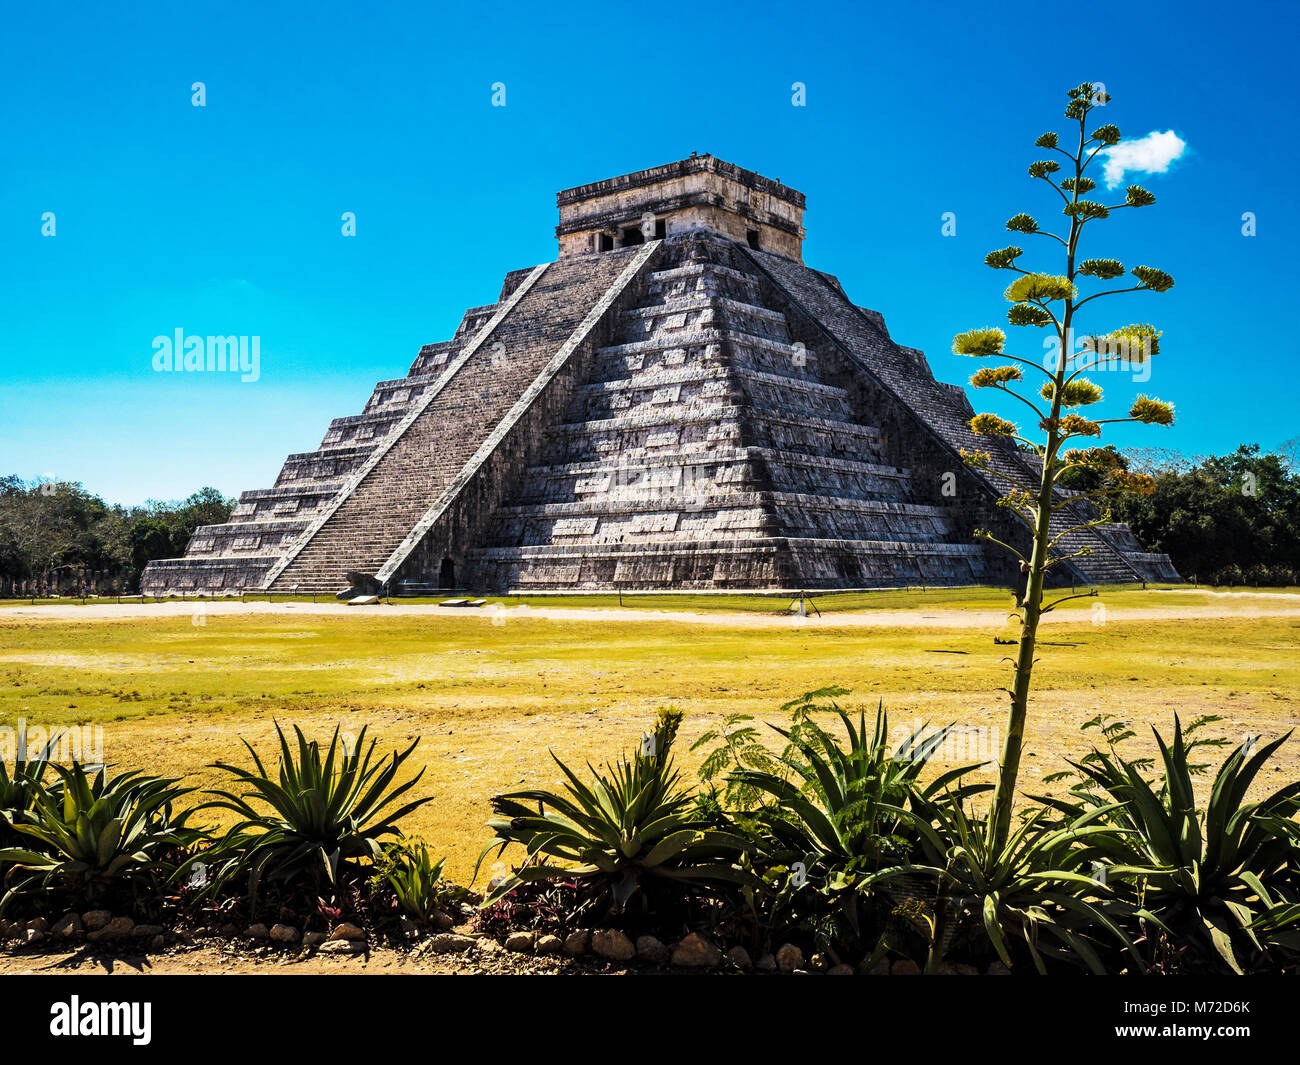 El Castillo, la pyramide de Kukulkán, est le plus populaire dans le bâtiment de l'UNESCO Ruine Maya Chichen Itza Site Archéologique Banque D'Images